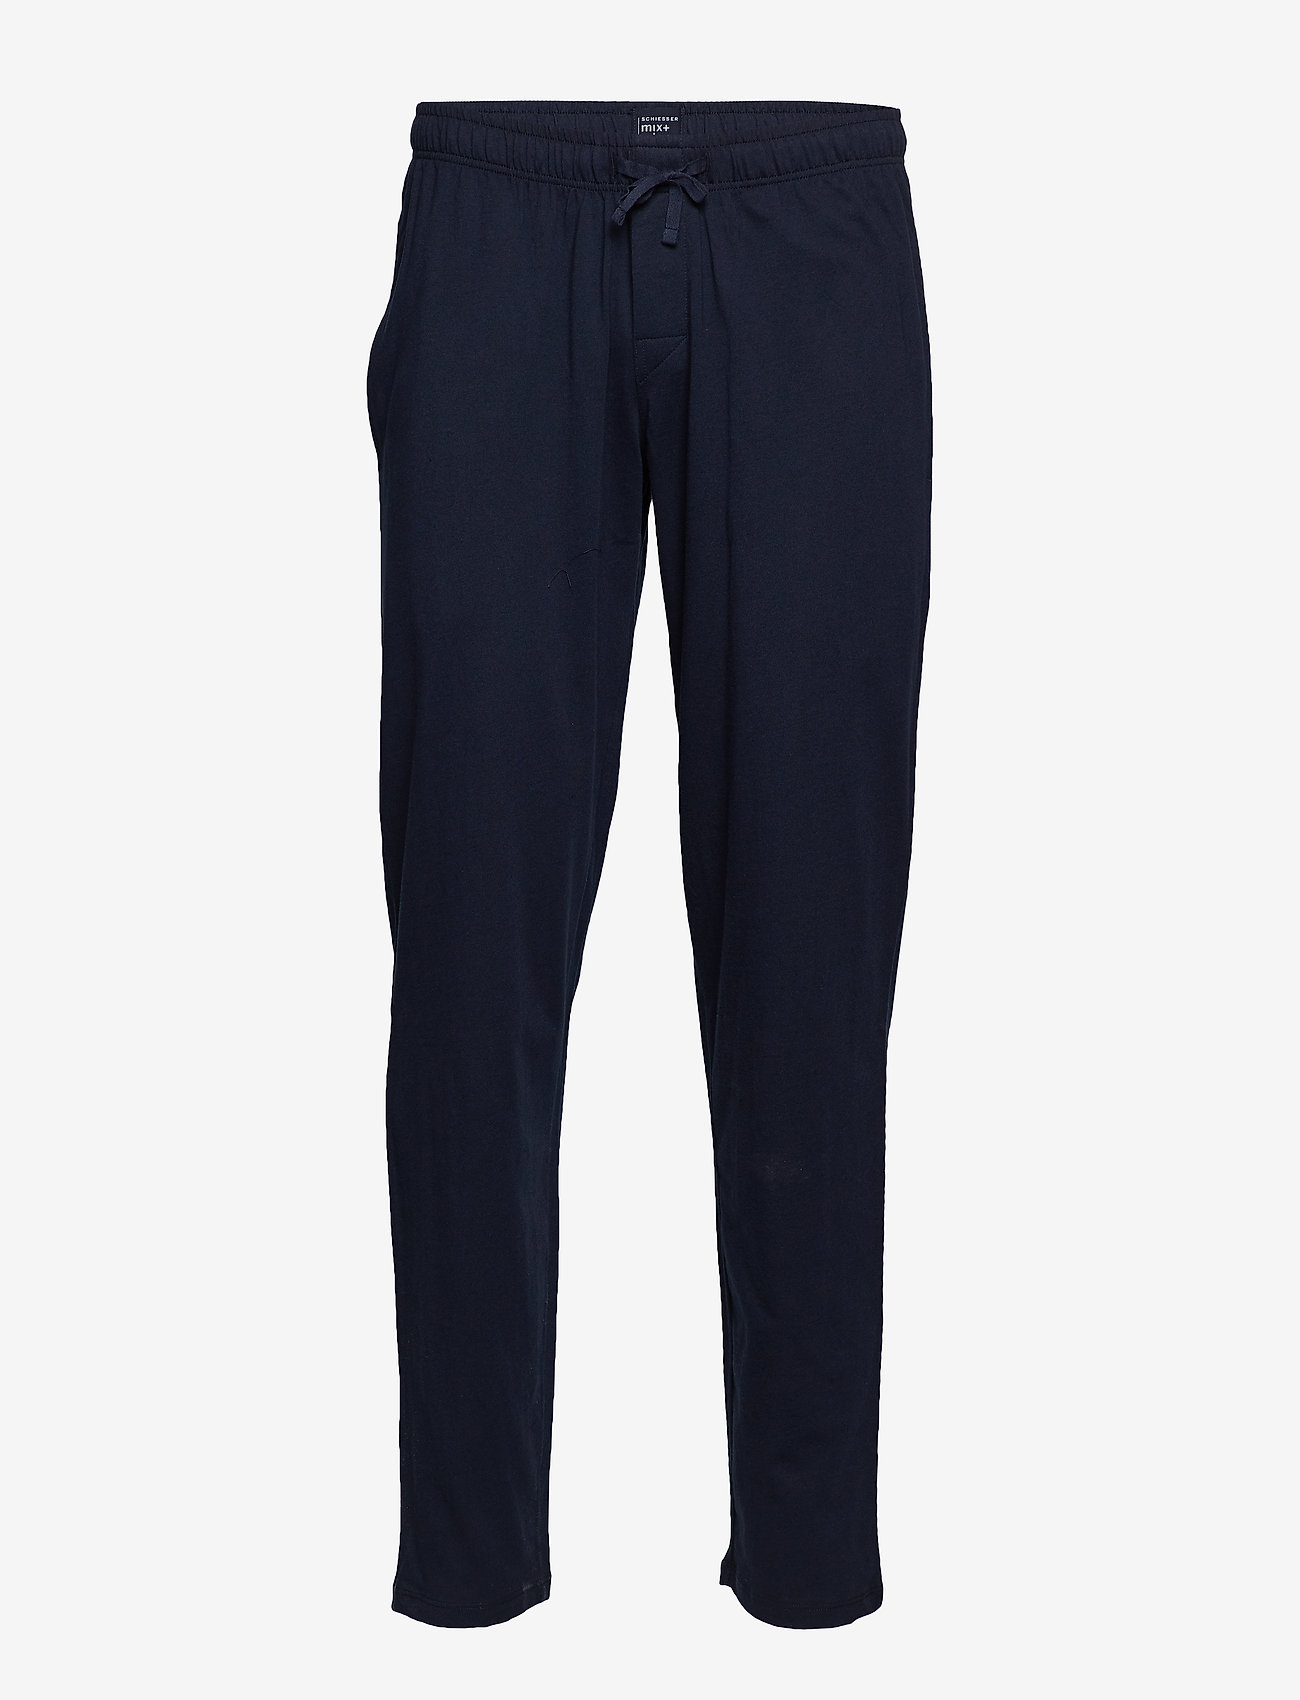 Schiesser - Long Pants - pyjamabroeken - dark blue - 1